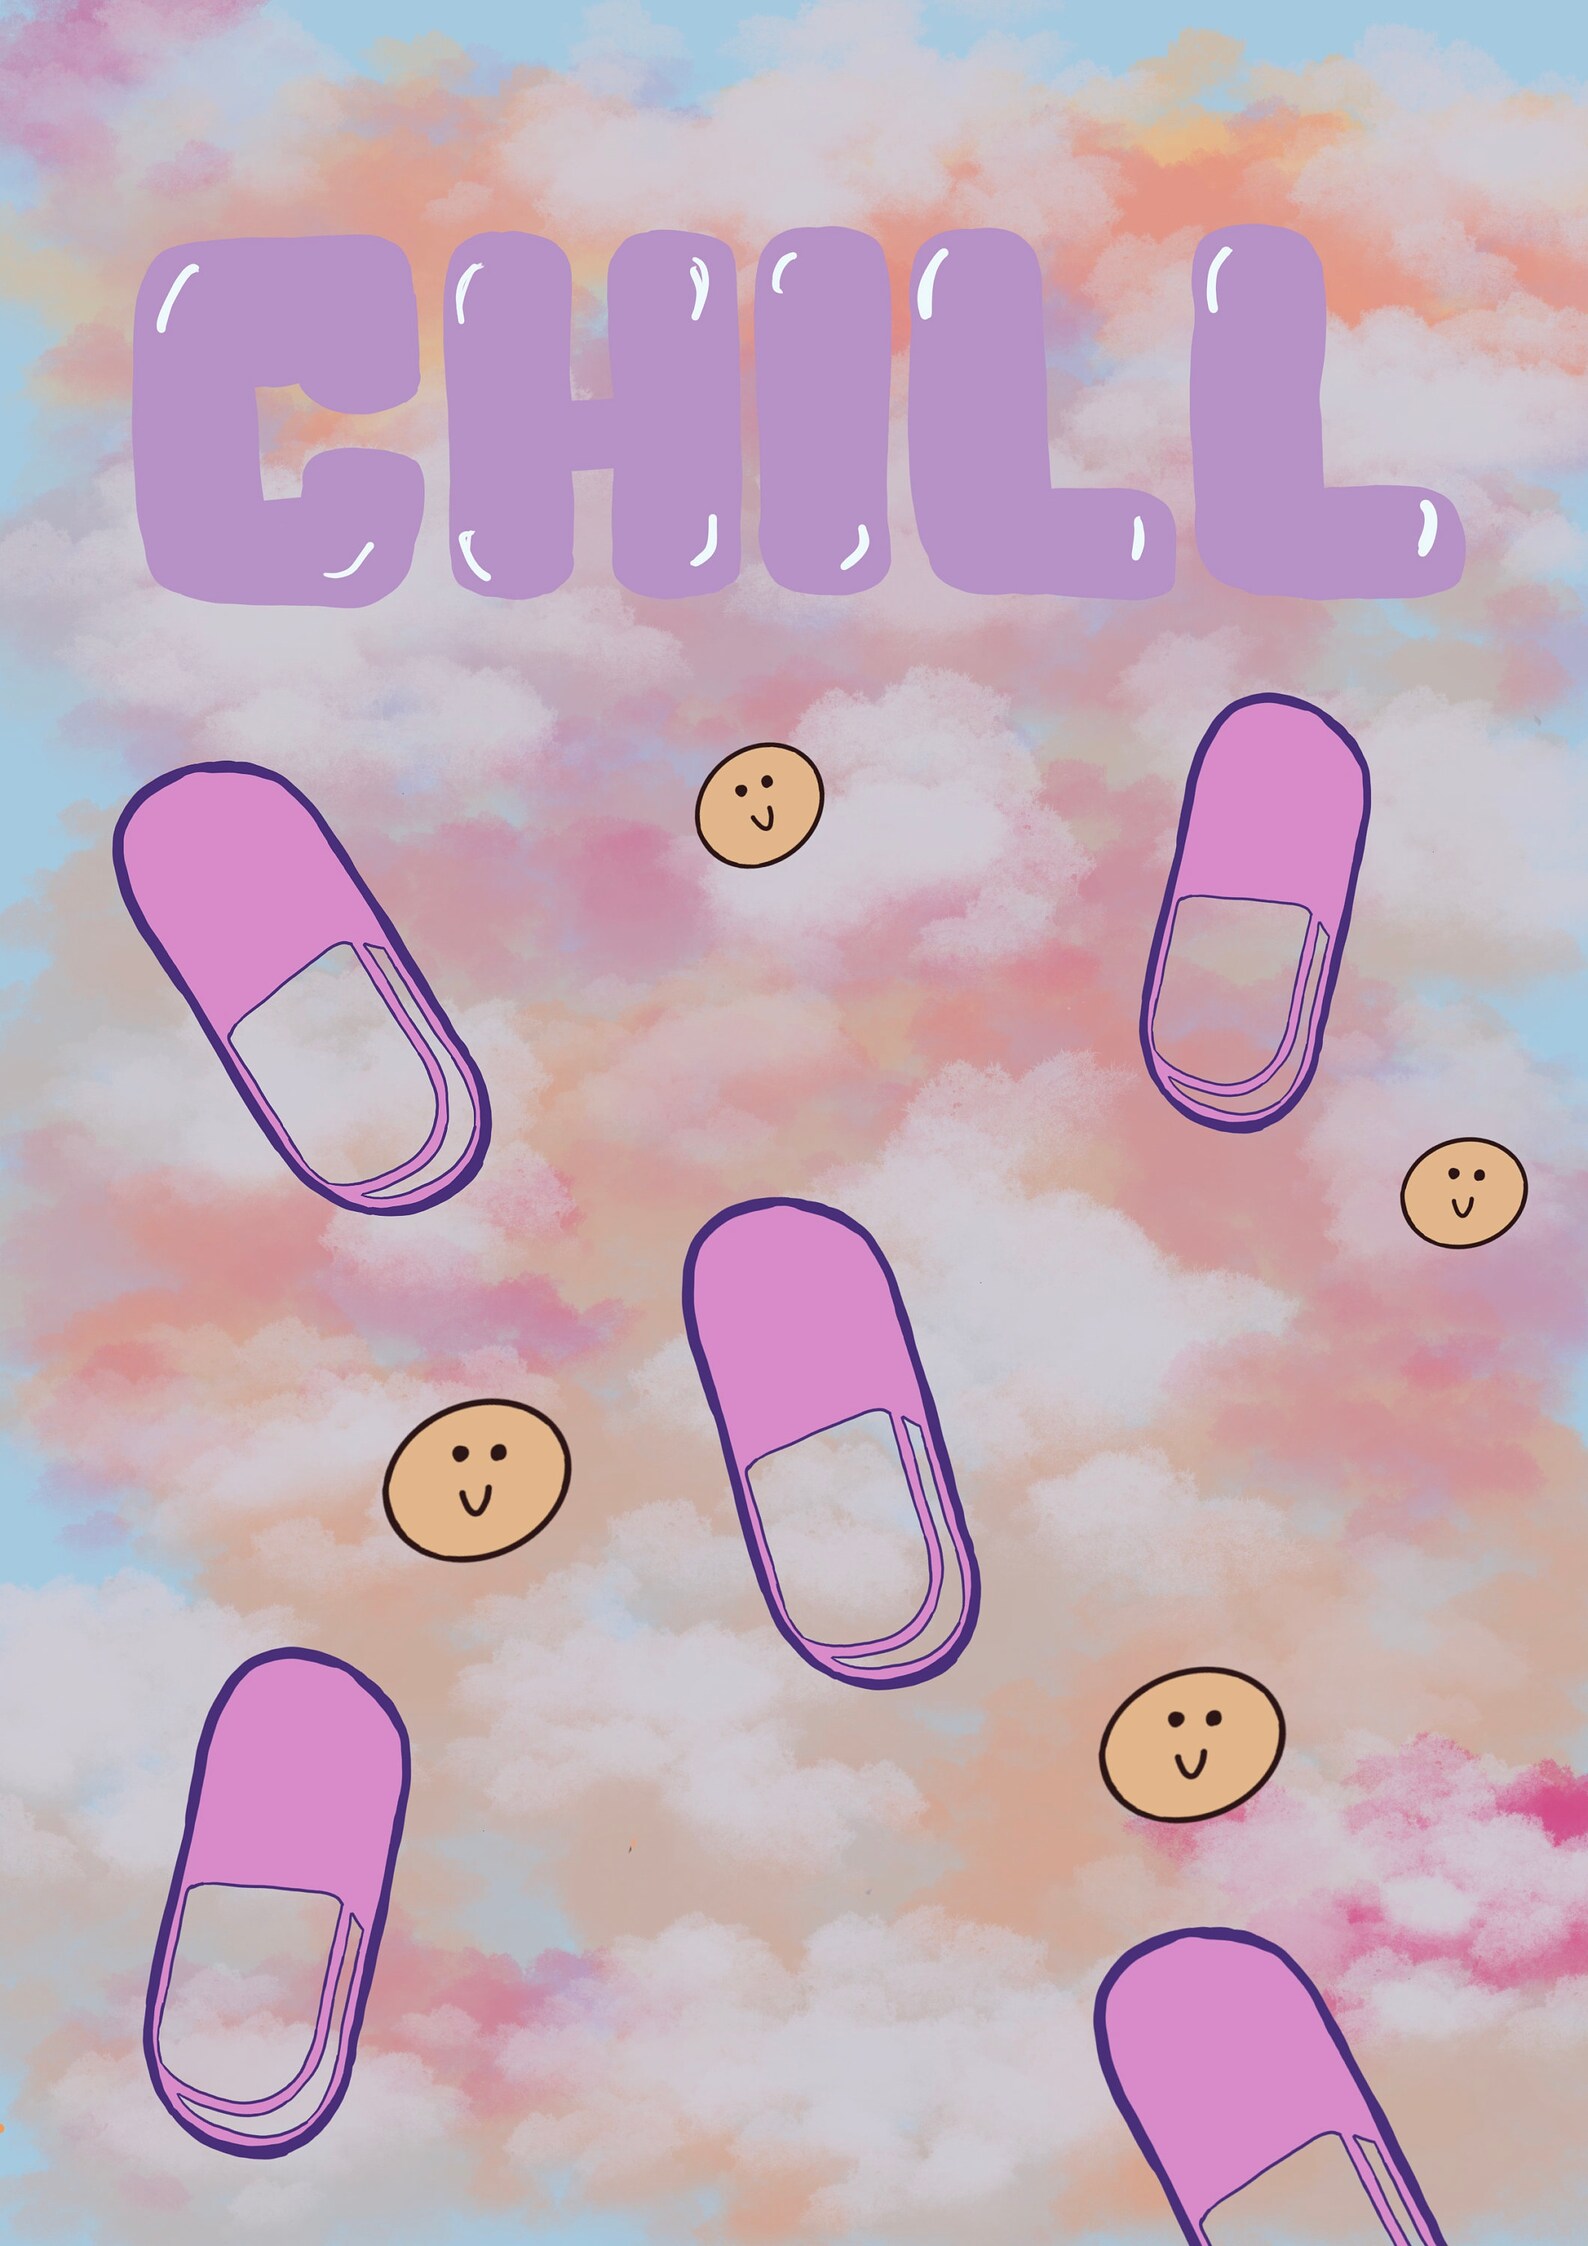 Chill Pill Digital Art Print - Etsy UK